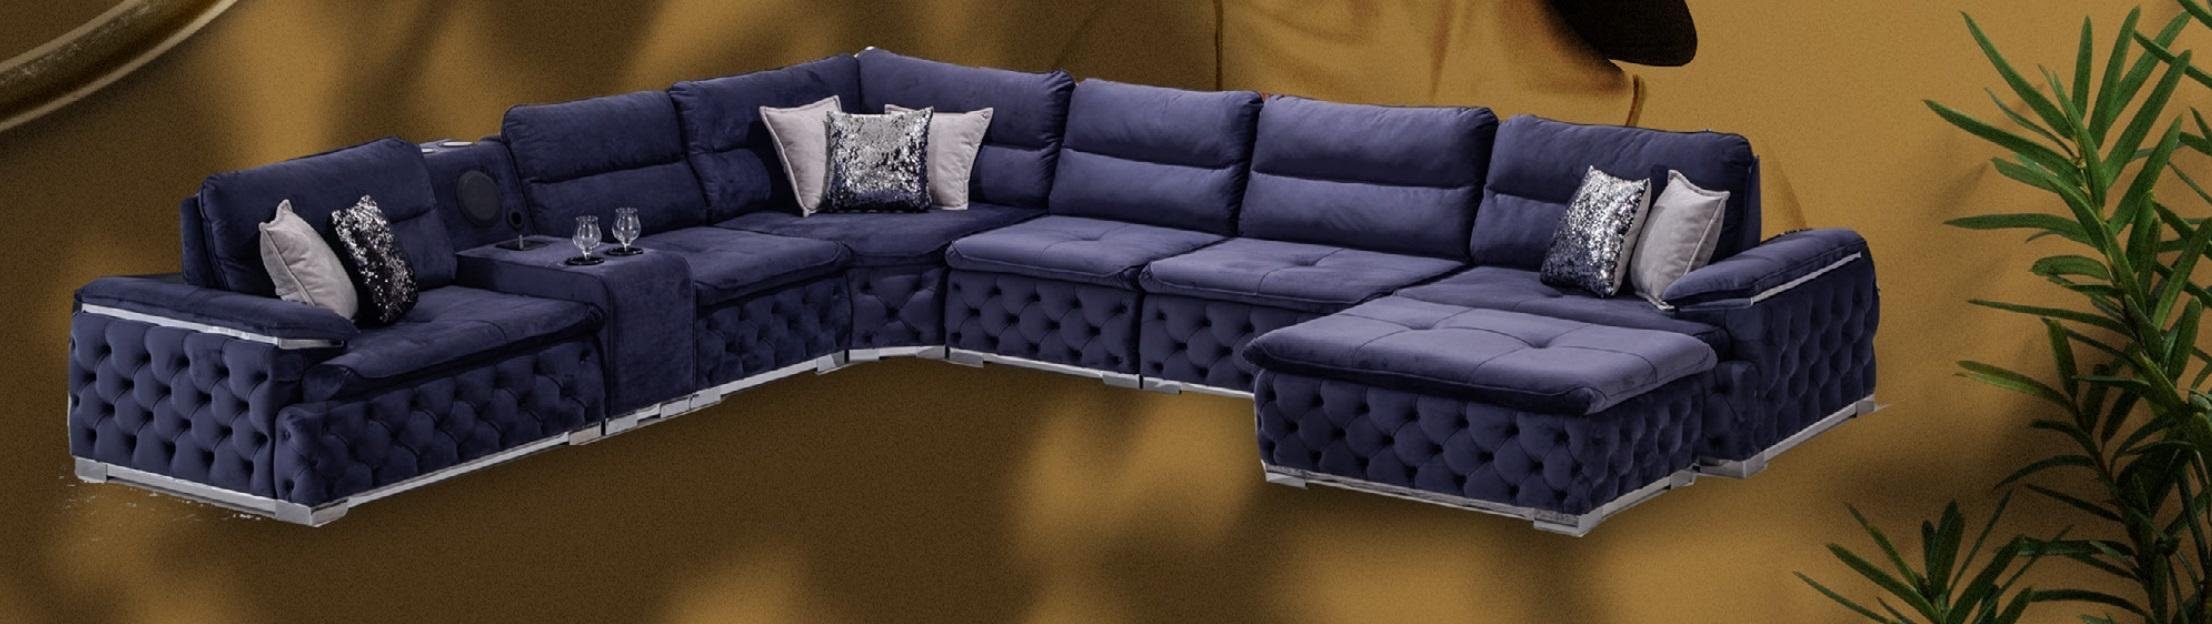 JVmoebel Ecksofa, Ecksofa U-Form Sofa Couch Sofas Wohnzimmer Möbel italienischer Stil